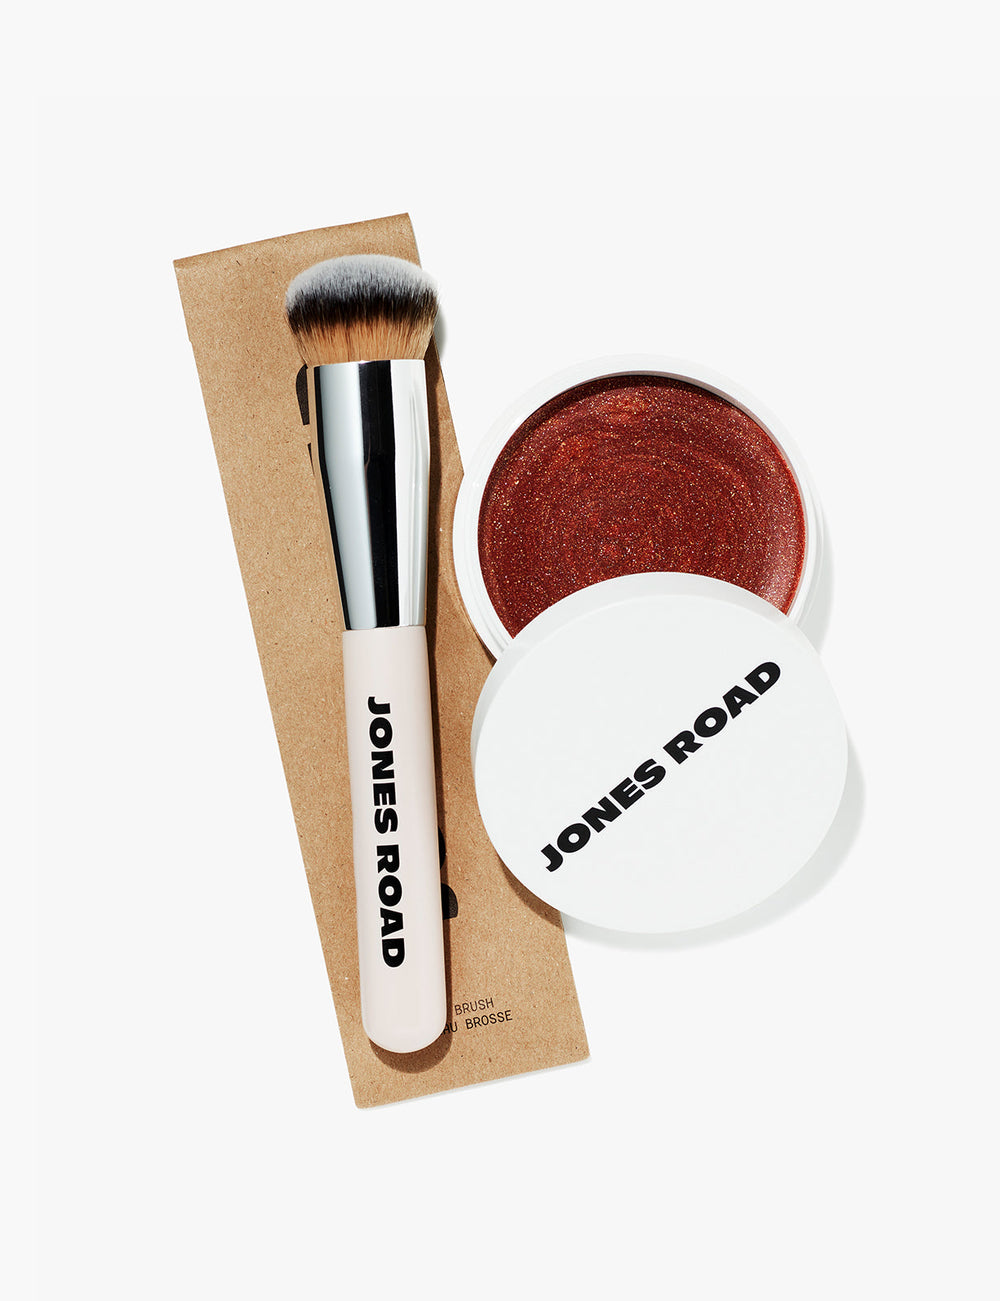 The Detail Brush for Clean Makeup – Jones Road